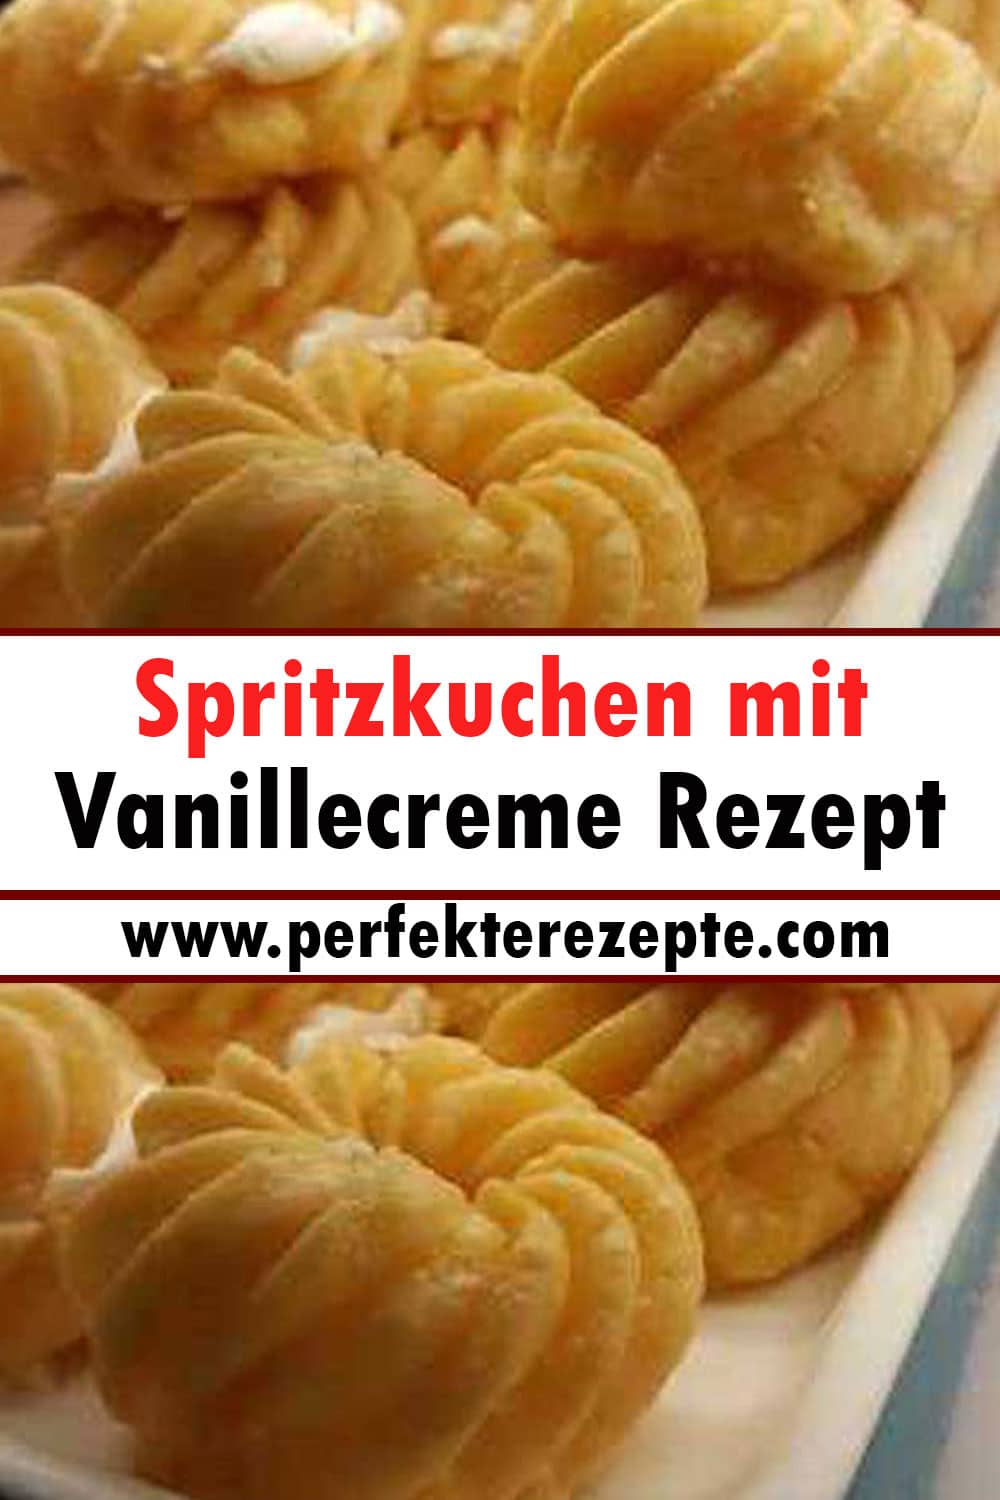 Spritzkuchen mit Vanillecreme Rezept